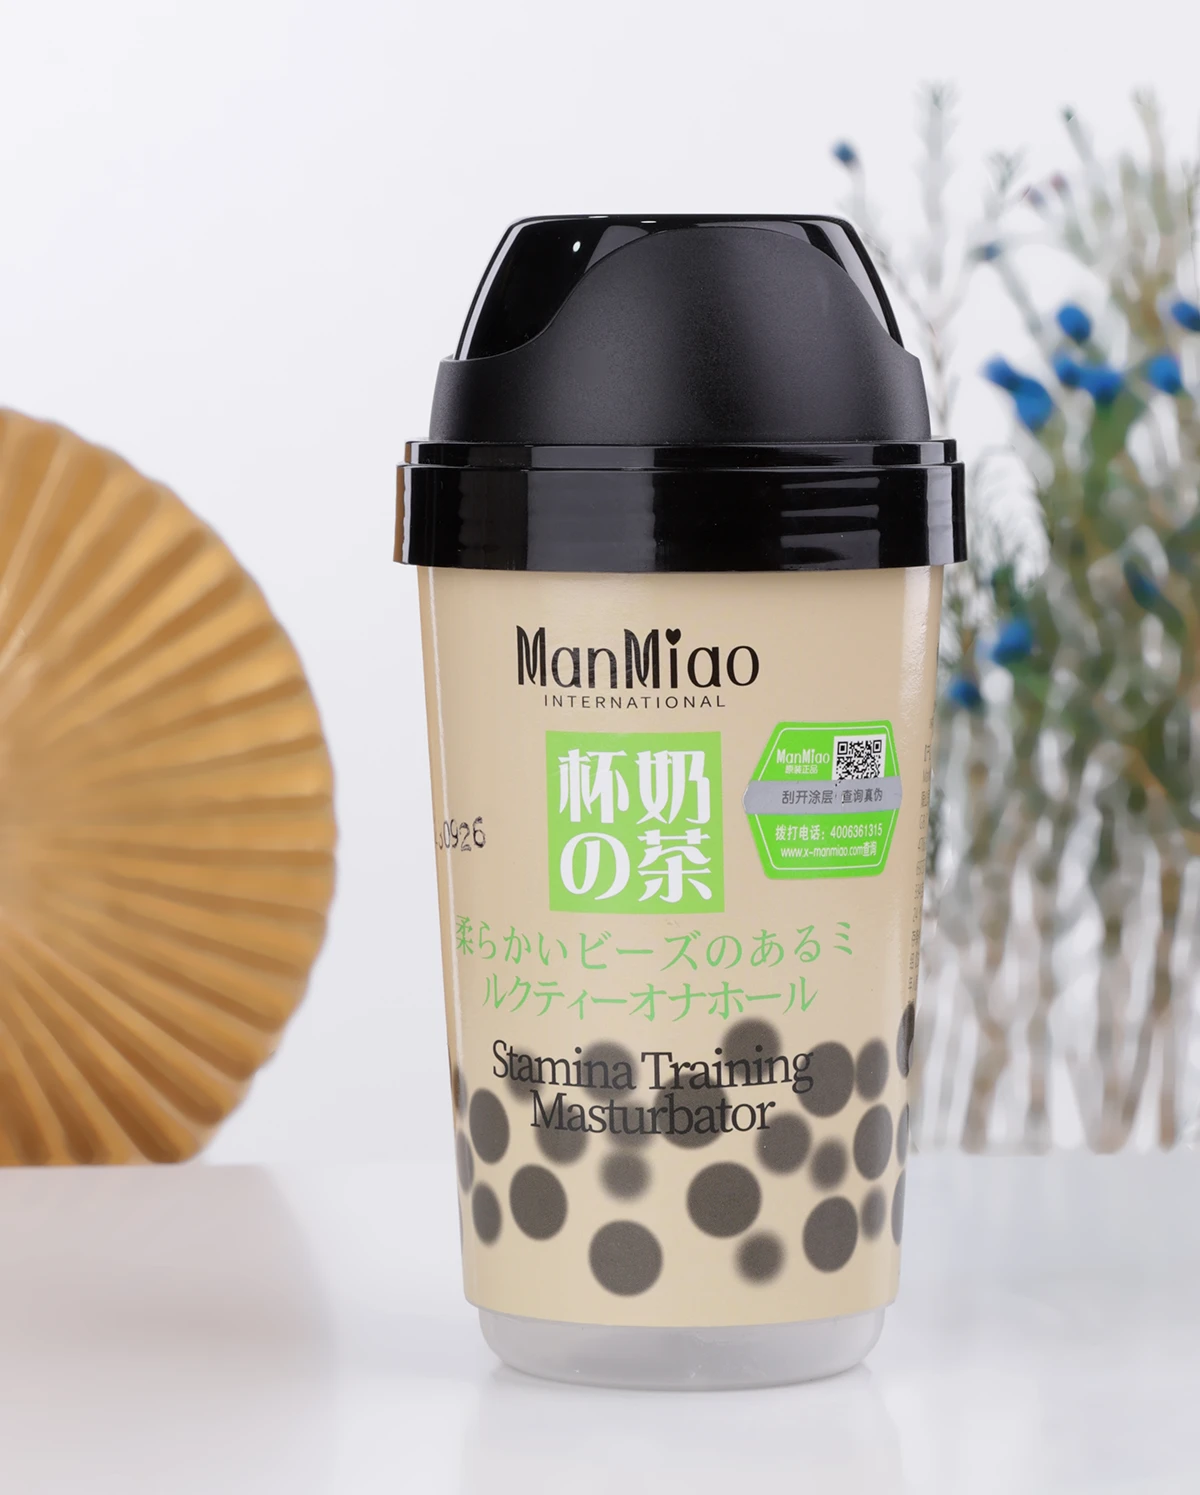 Review Cốc thủ dâm Manmiao Stamina Training thiết kế nguỵ trang ly trà sữa có hạt trân châu giá sỉ